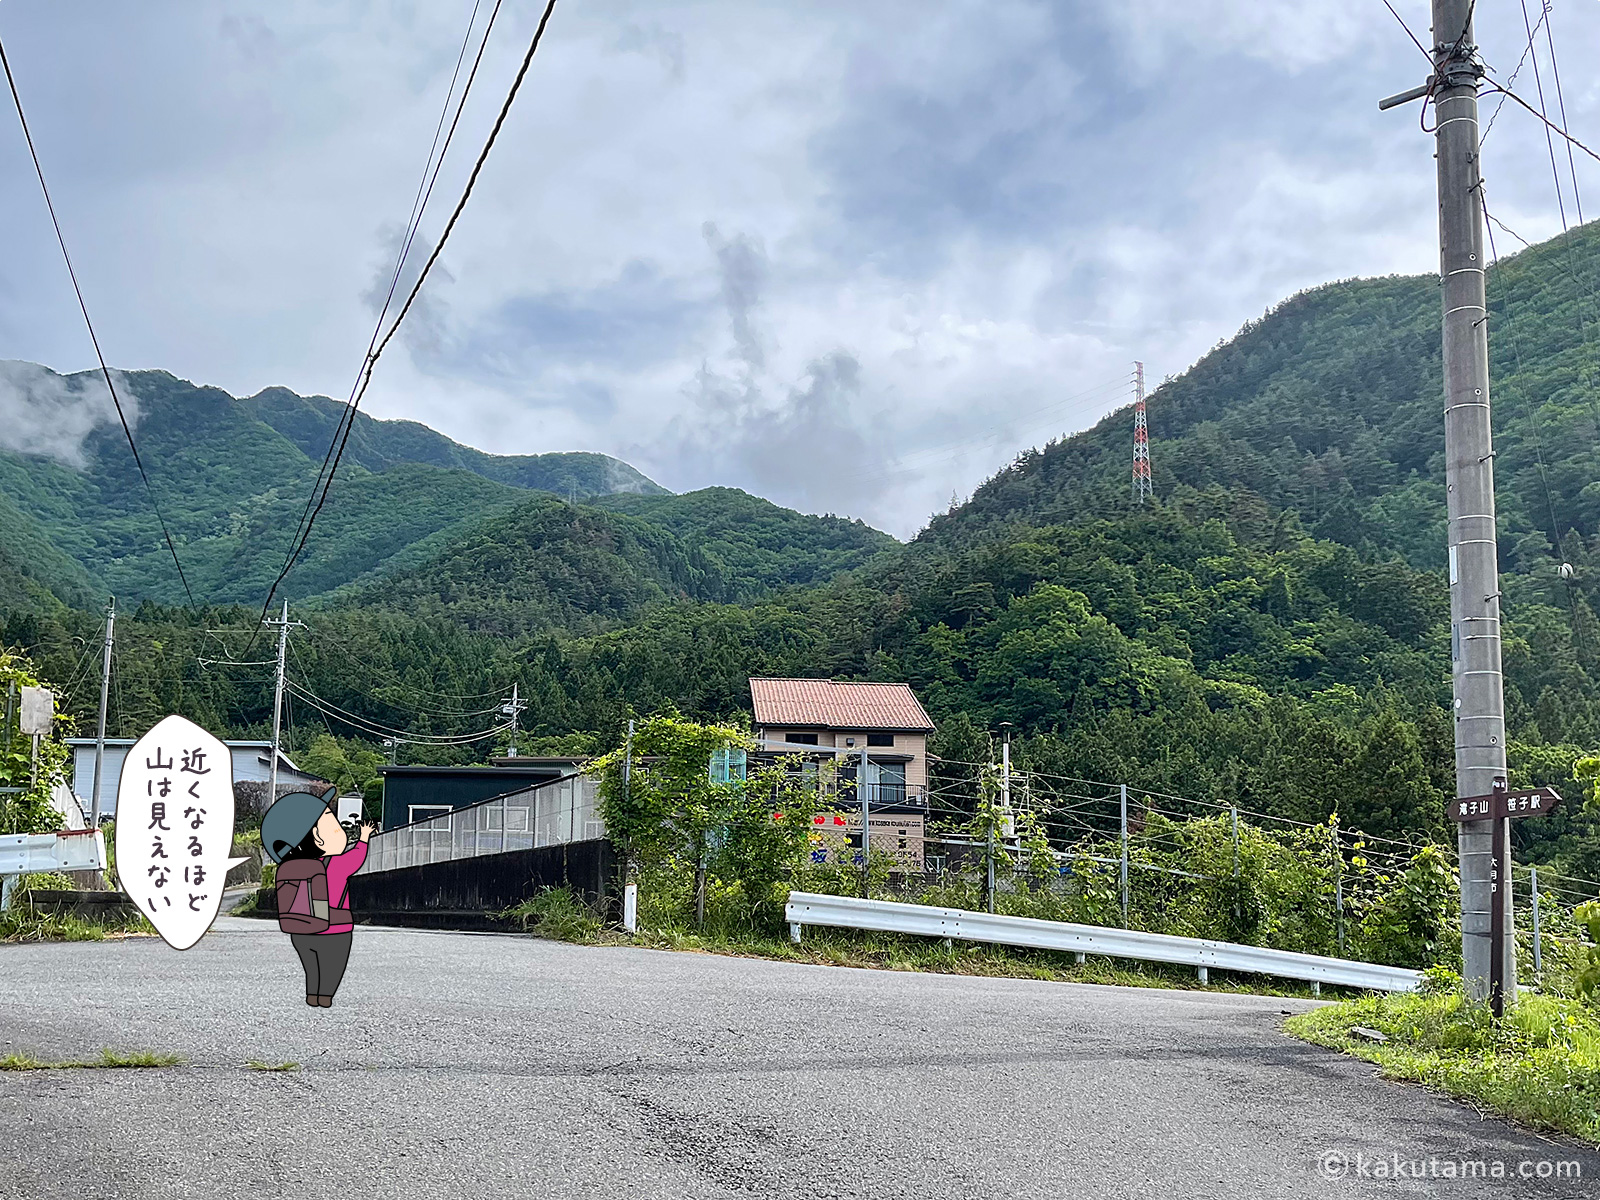 滝子山方面へ向かって笹子駅から街中を歩く写真と登山者のイラスト